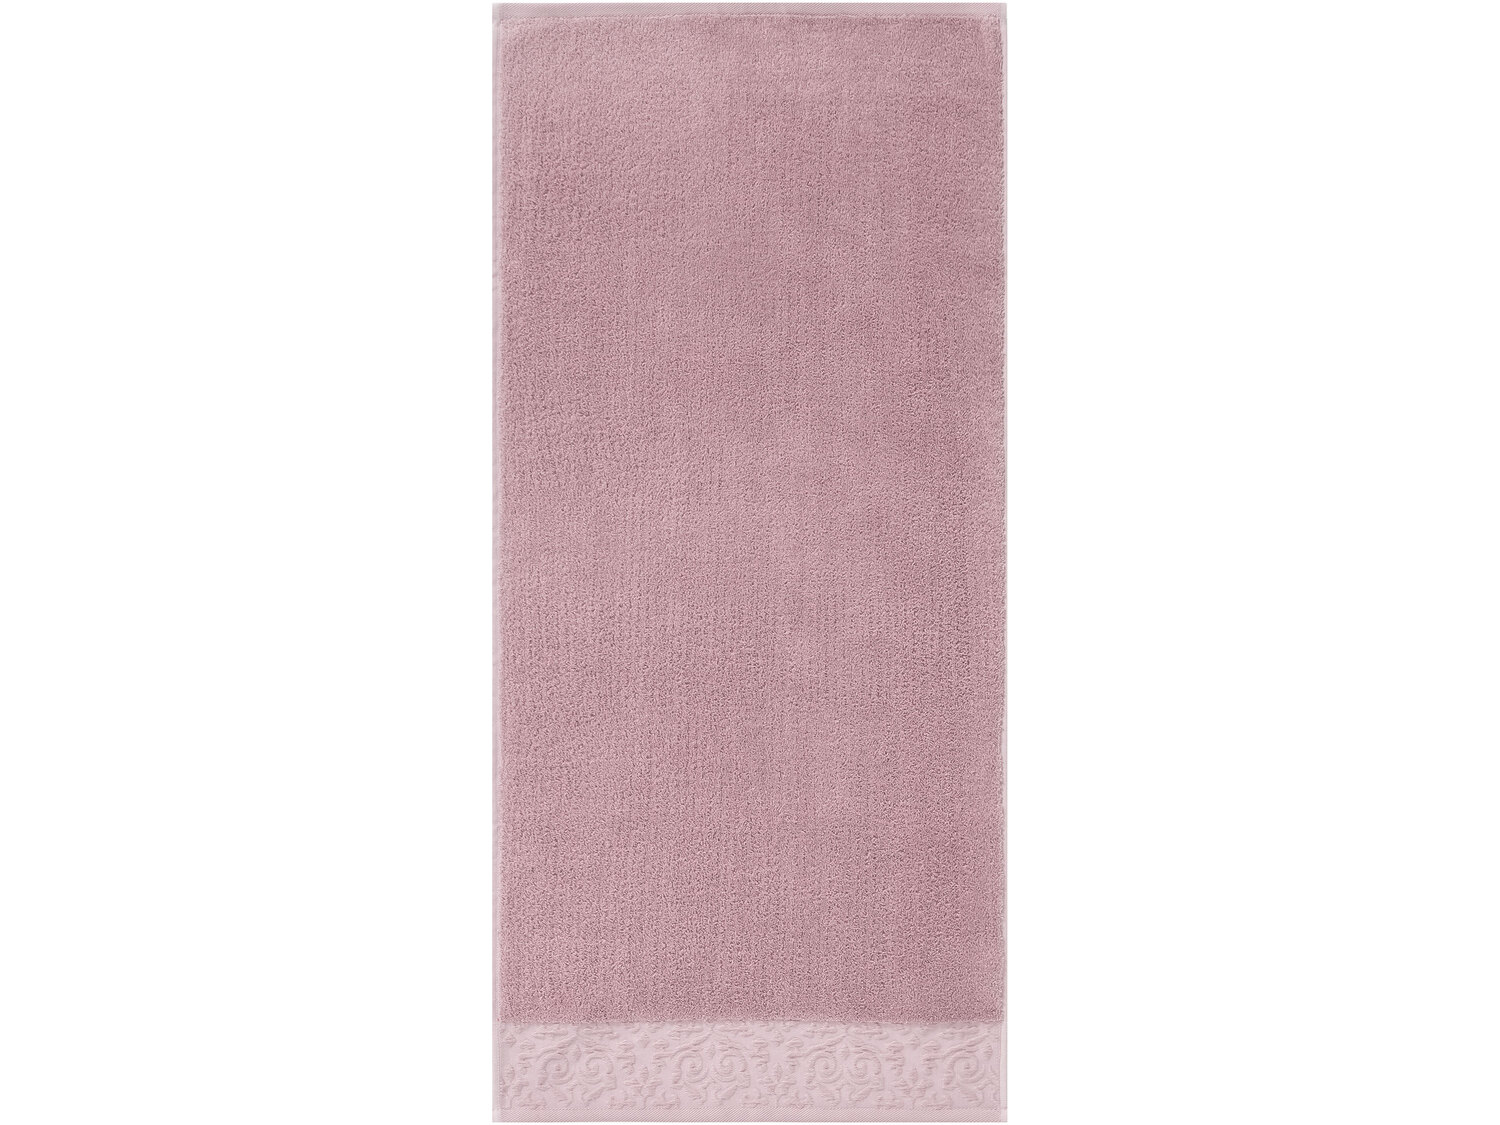 Ręcznik frotté 50 x 100 cm Livarno, cena 11,99 PLN 
10 wzorów 
- 100% bawełny
- ...